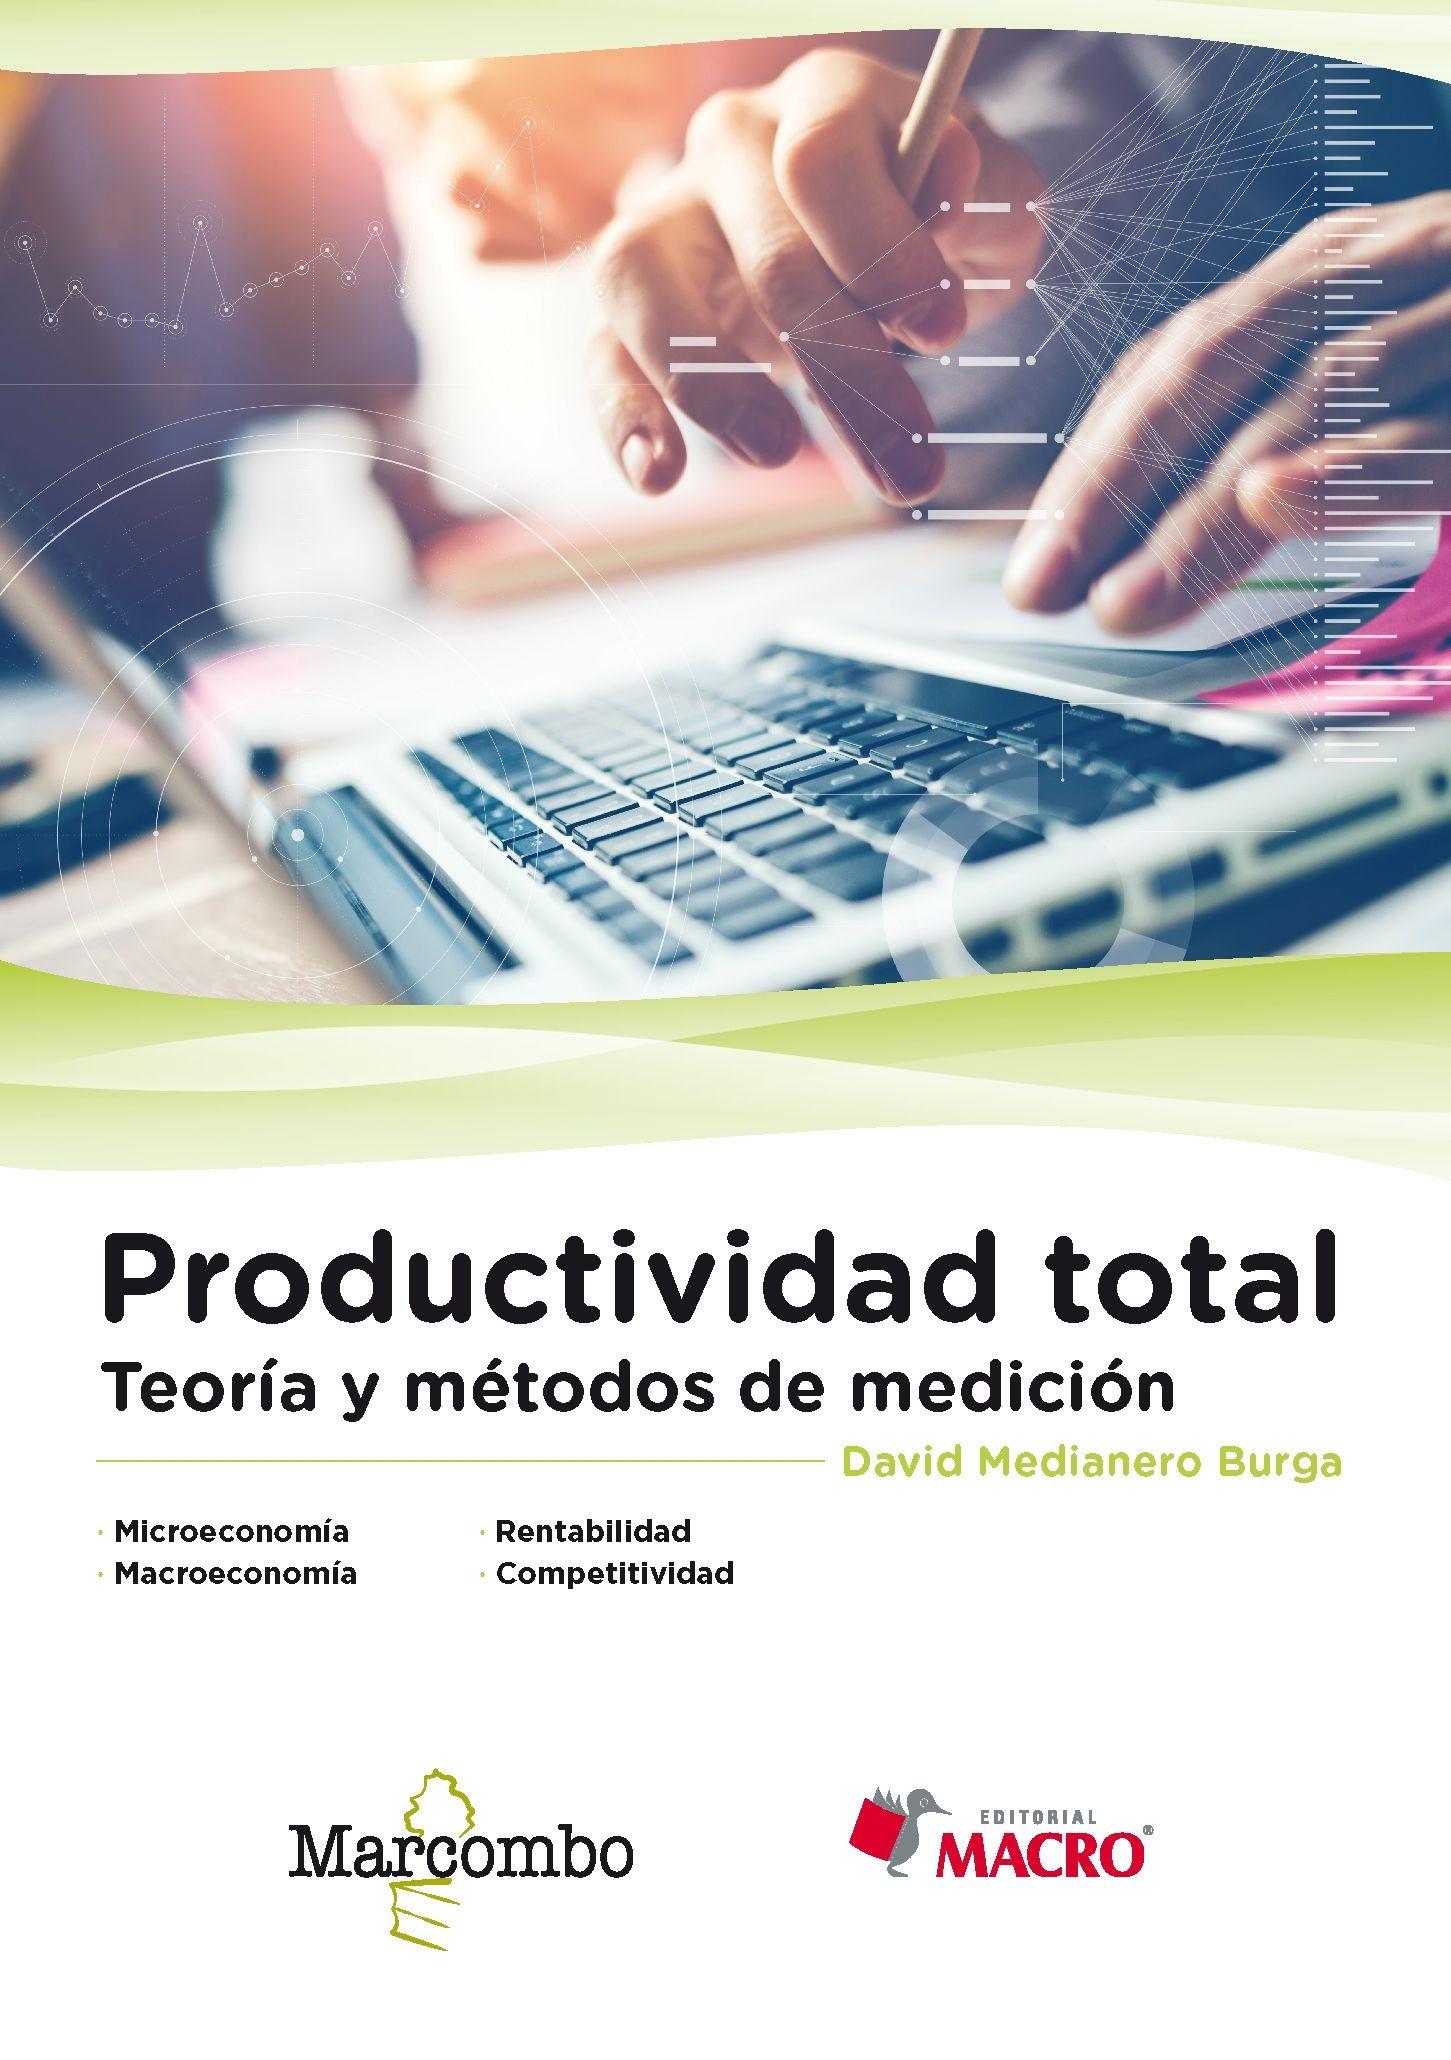 Productividad total "Teoría y métodos de medición"